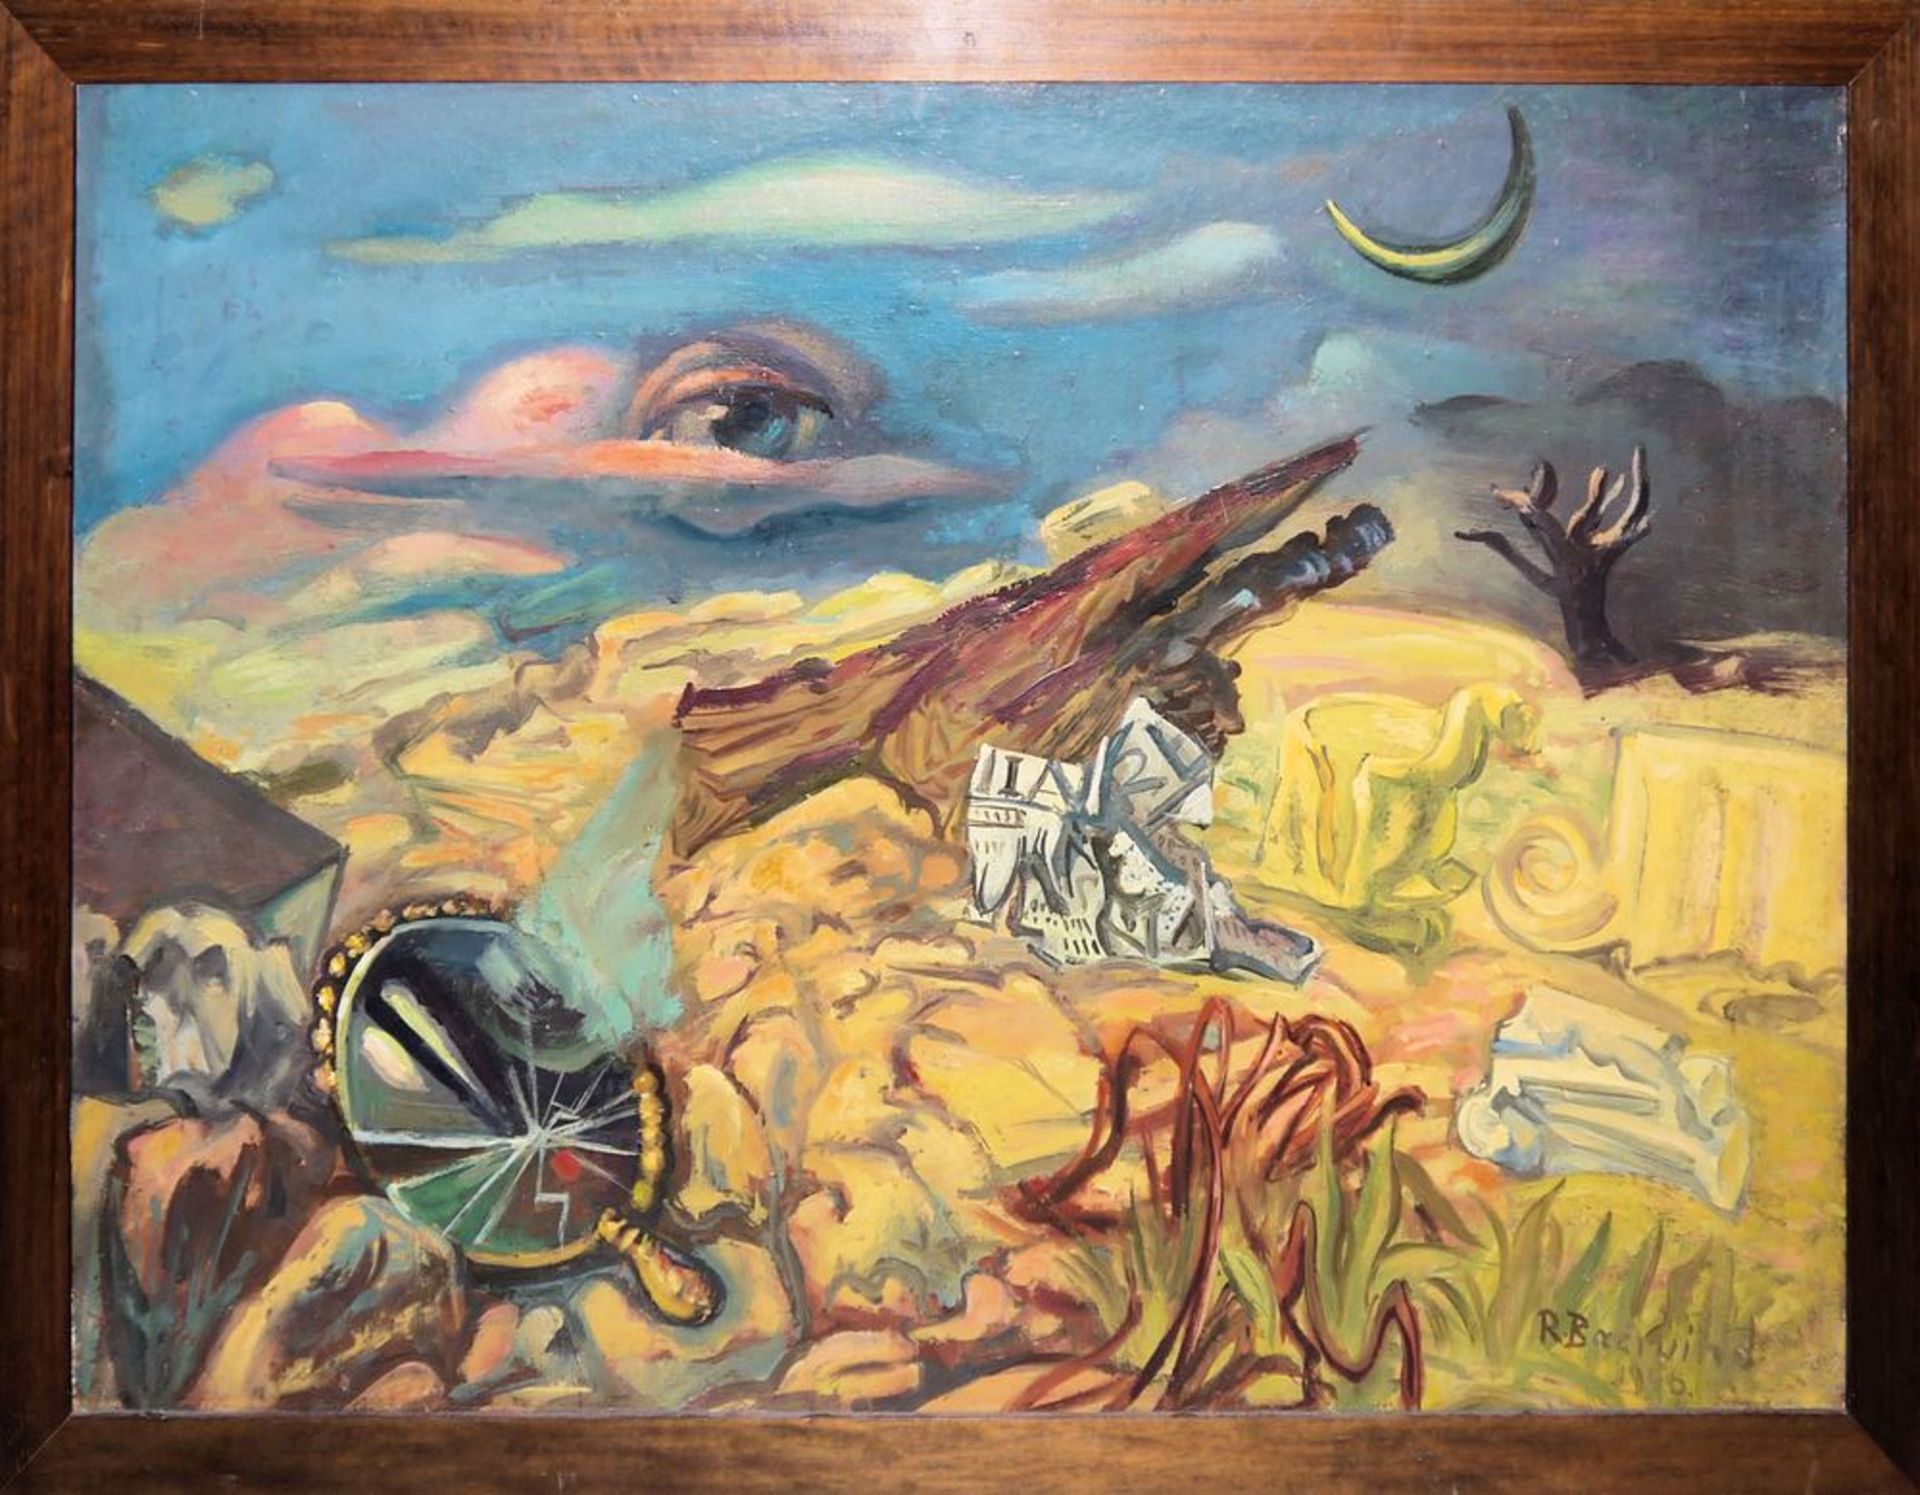 Rudi Baerwind, "Das Auge Gottes", signiertes Ölgemälde von 1946, gerahmt